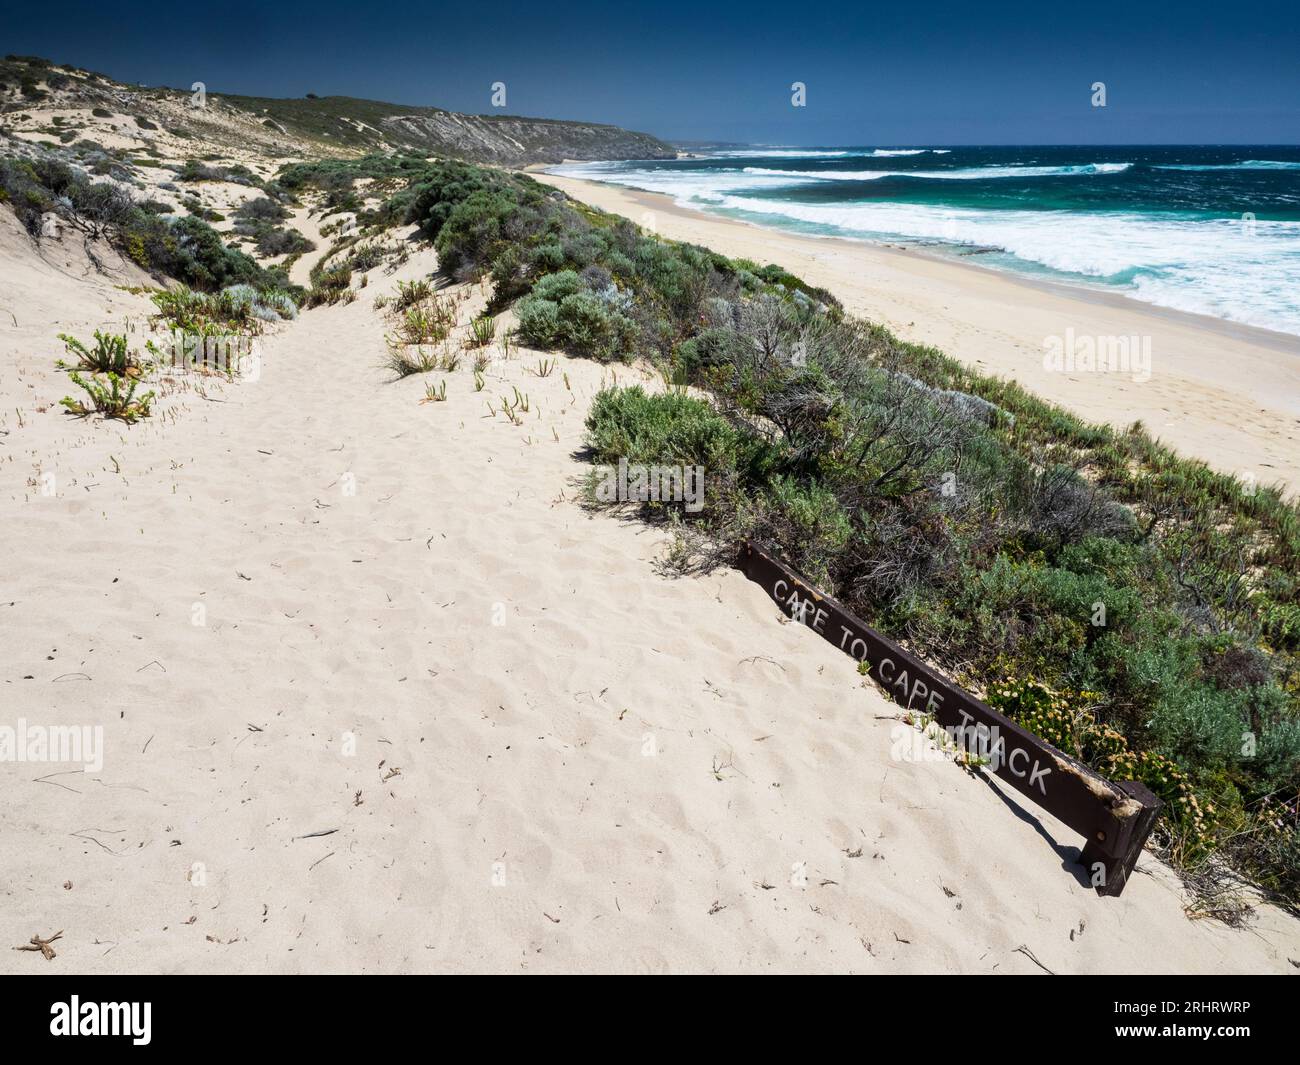 Schild von Cape to Cape Track unter Sand begraben, Gallows Beach, nördlich von Gracetown, Leeuwin-Naturaliste National Park, Western Australia Stockfoto